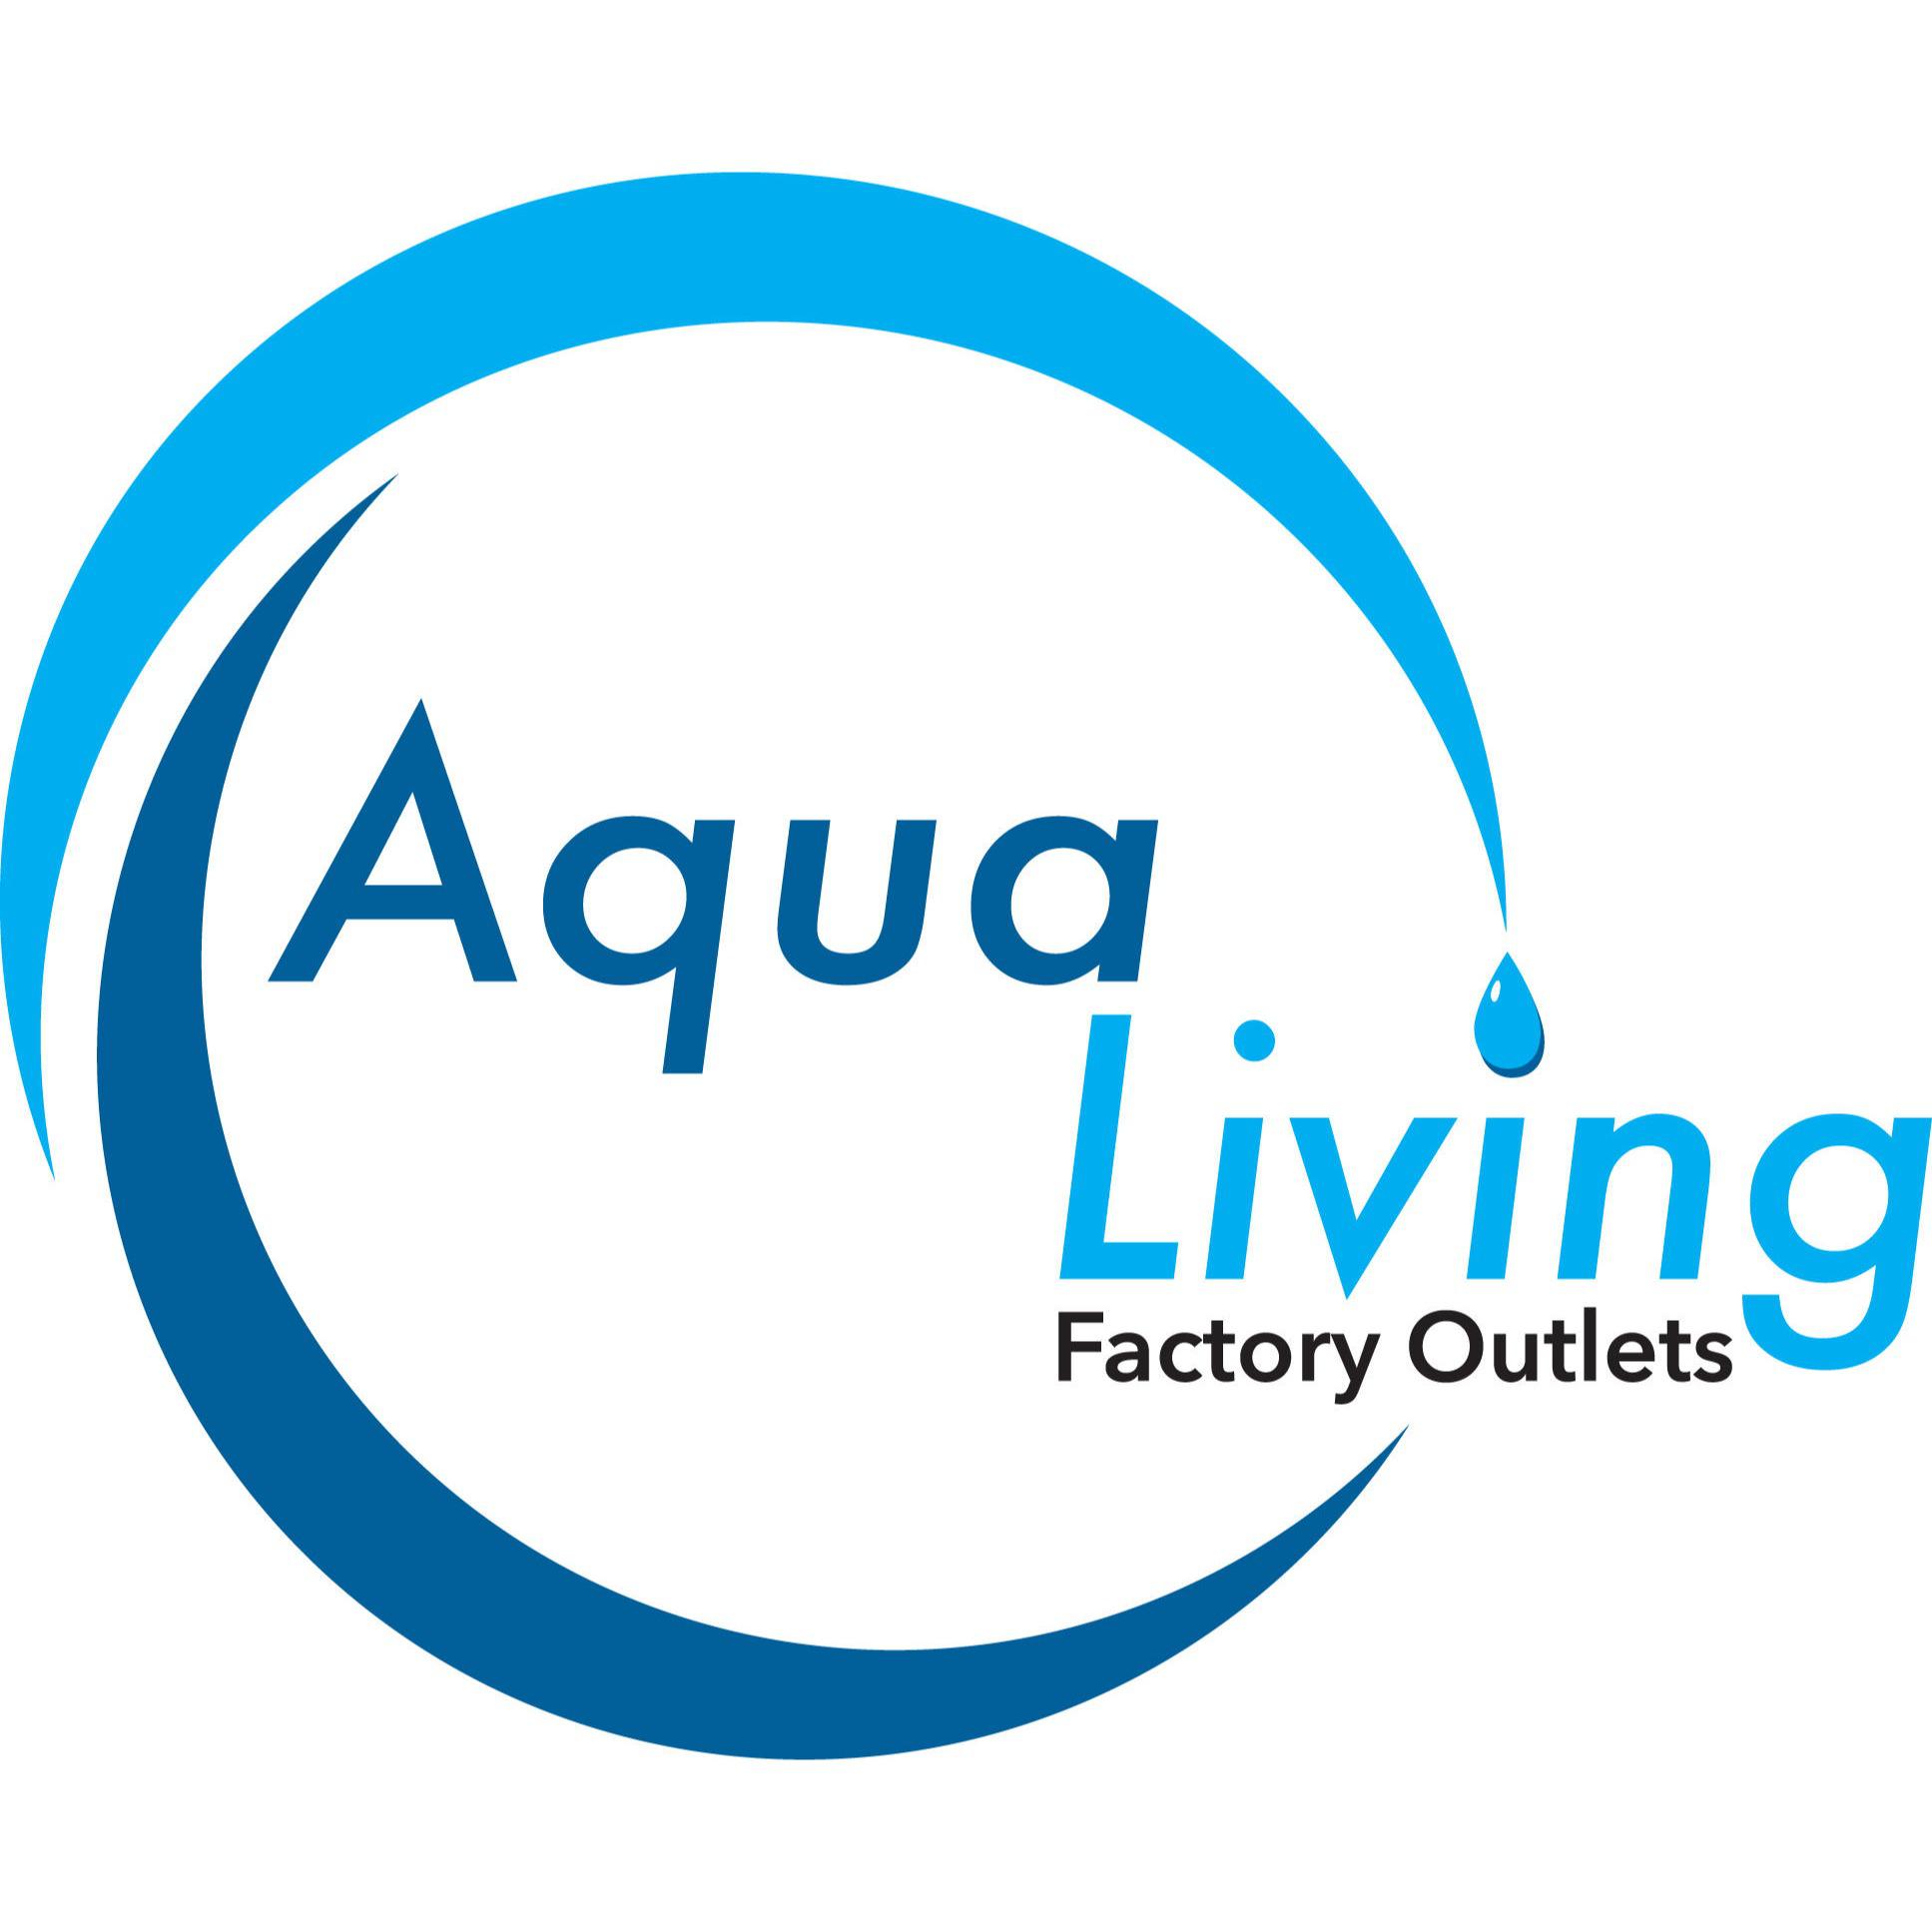 Aqua Living Factory Outlets - Wichita, KS 67207 - (316)226-9020 | ShowMeLocal.com